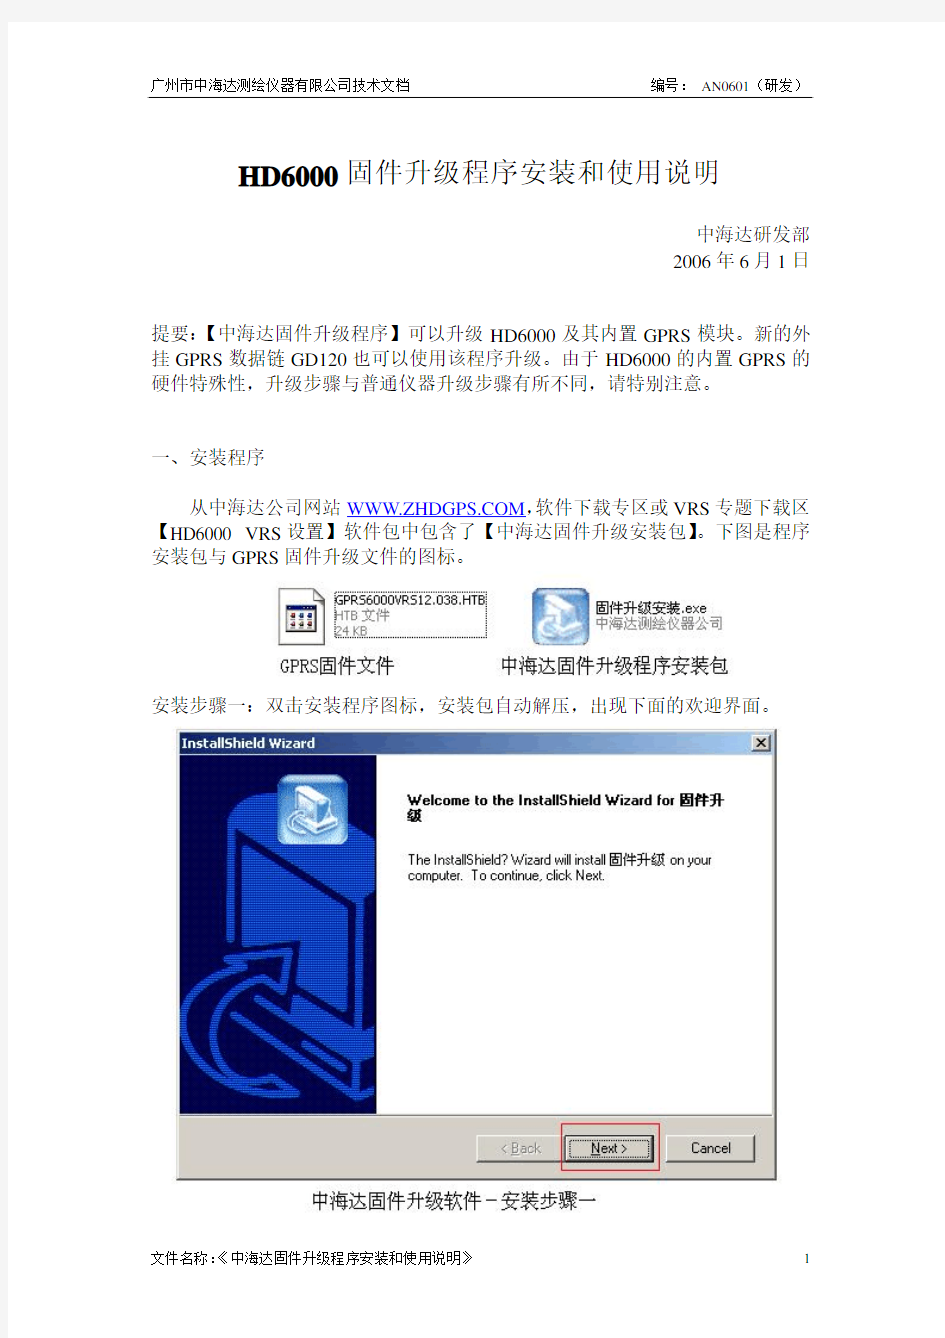 中海达固件升级程序安装和使用说明_AN0601